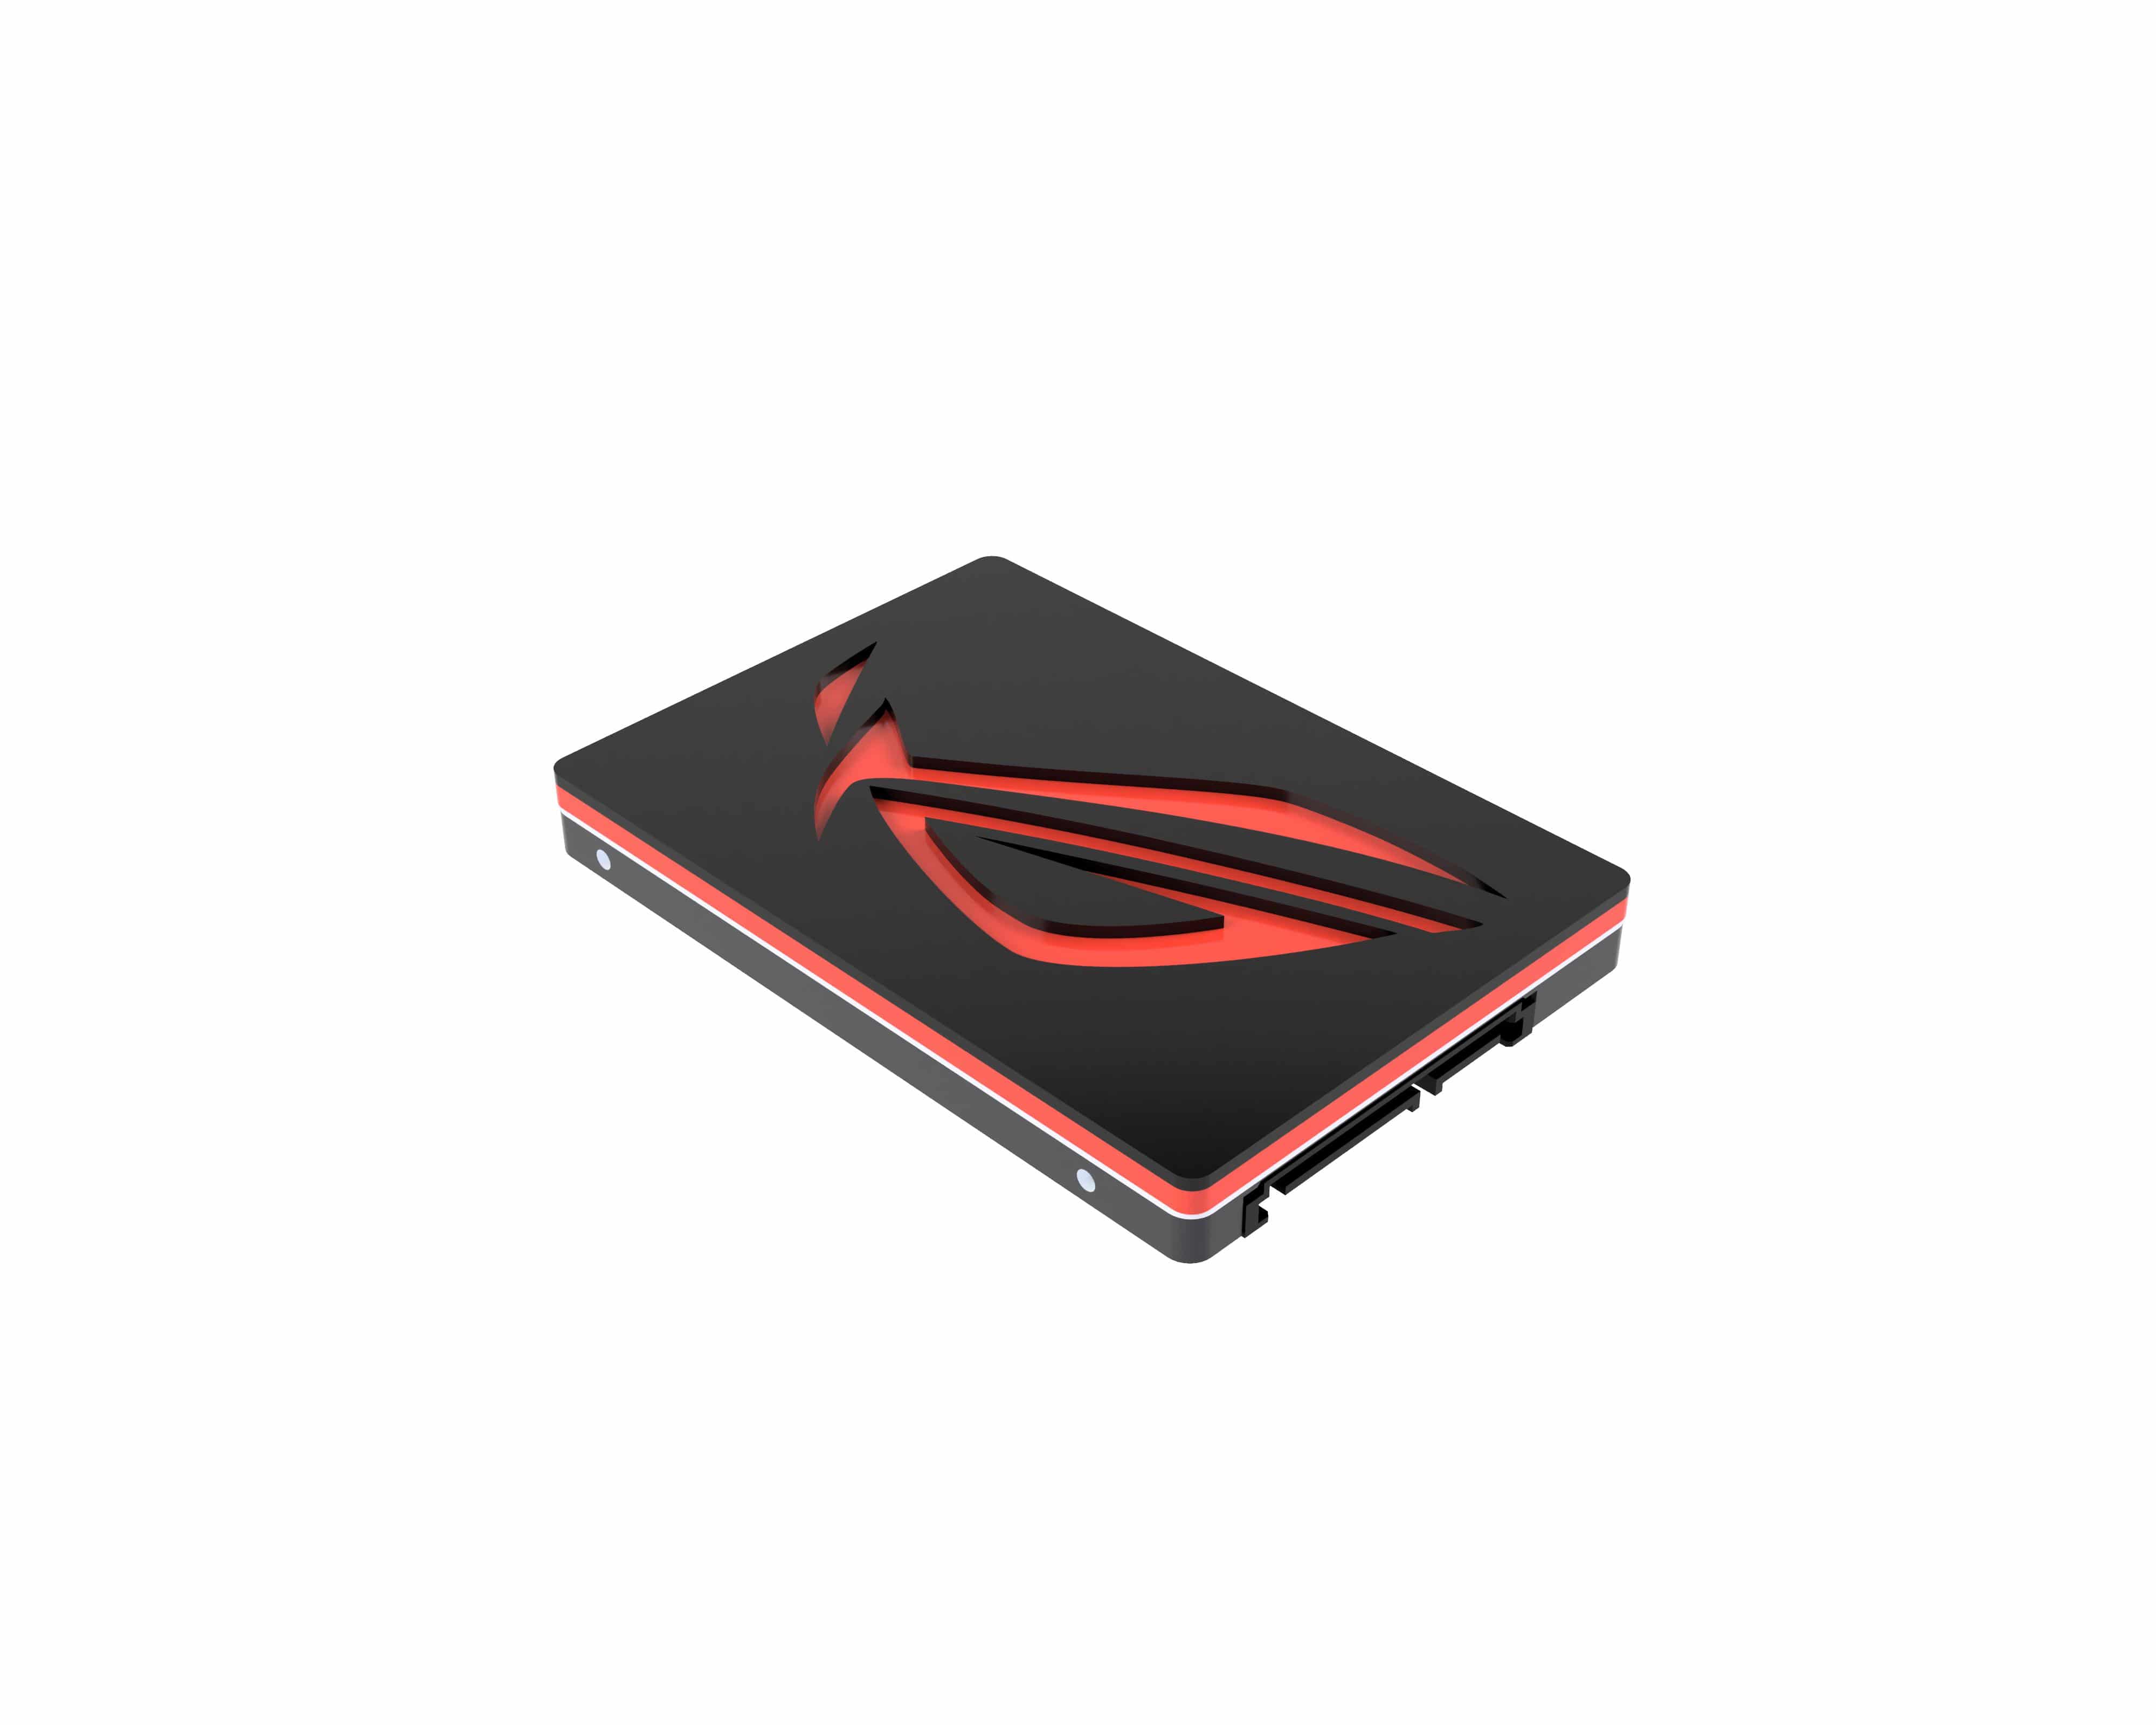 Asus ROG Logo - Asus ROG logo SSD/HDD Cover or Puck Choose Any Color! - Savant PCs